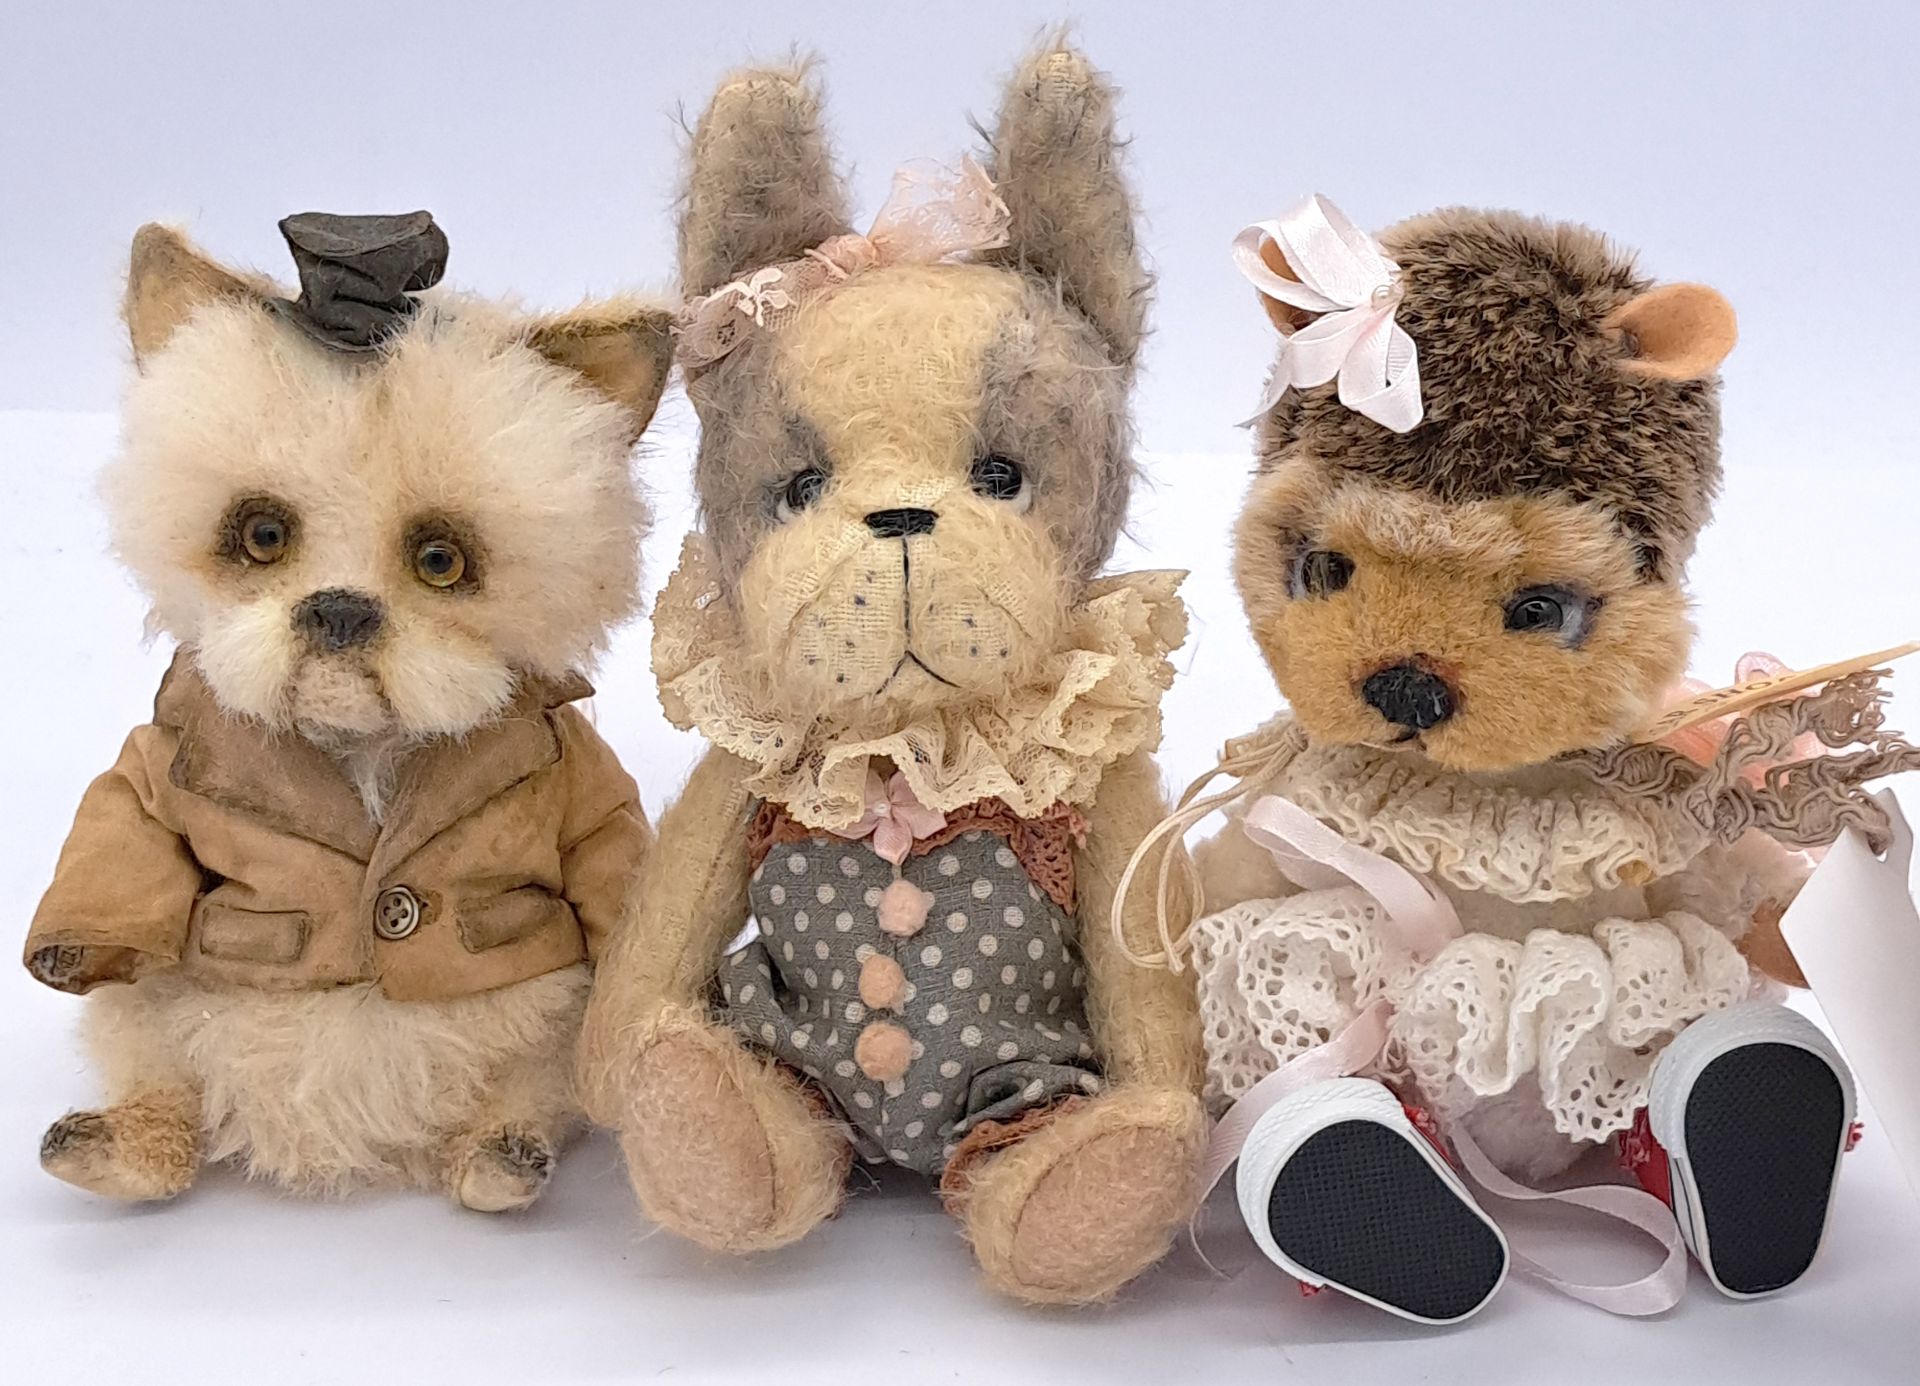 Artist bears trio: Skye Rose Bears, Astrid Bears plus unknown artist